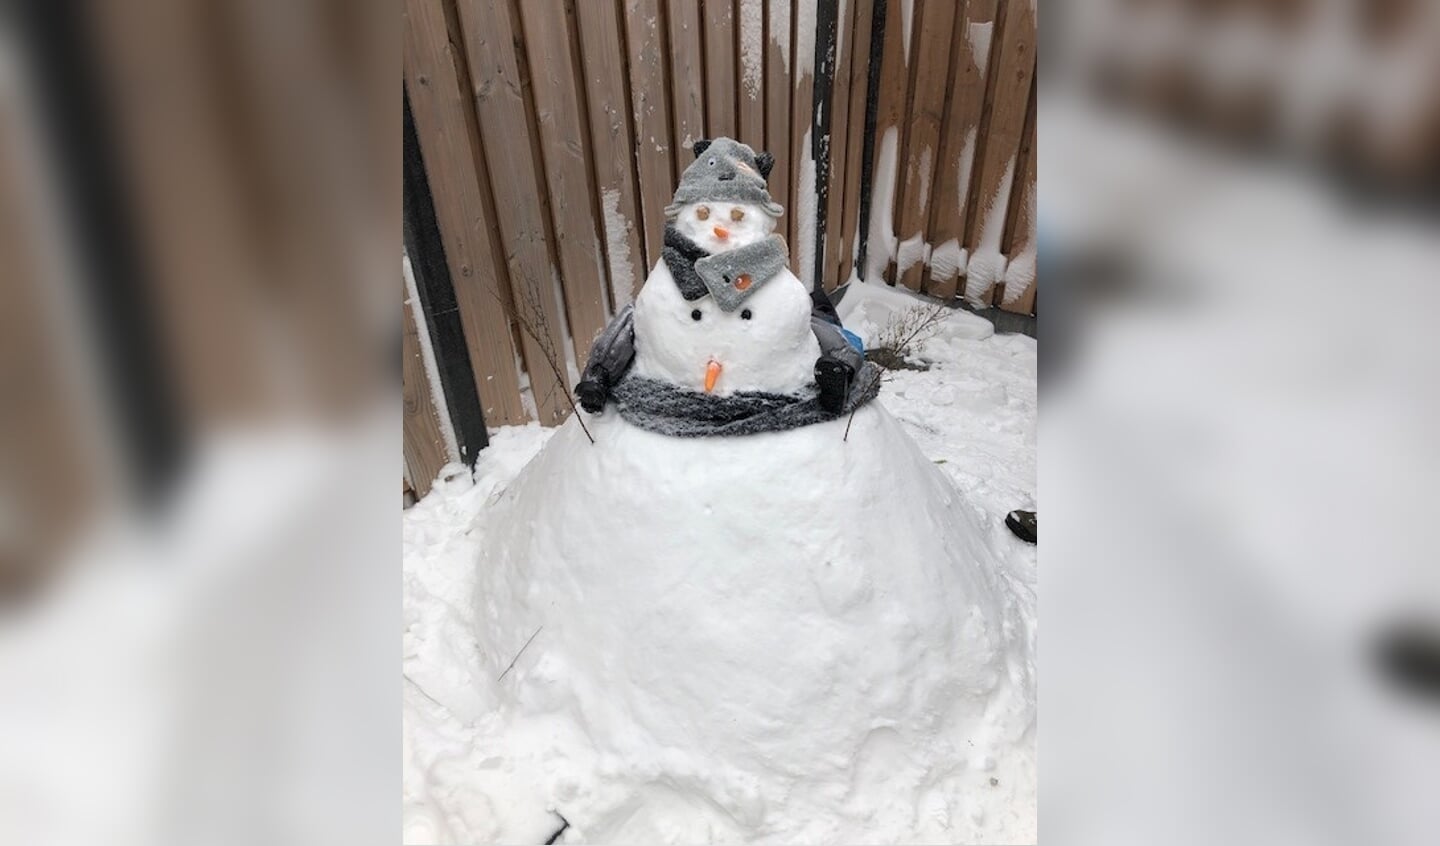 Ouders Robin en Mariëlle uit Voorhout verrasten hun zoontje met een sneeuwpop. "Sneeuwpop met twee gezichten en met wat fantasie, herken je in sneeuwpop een ouder met kindje op de nek."